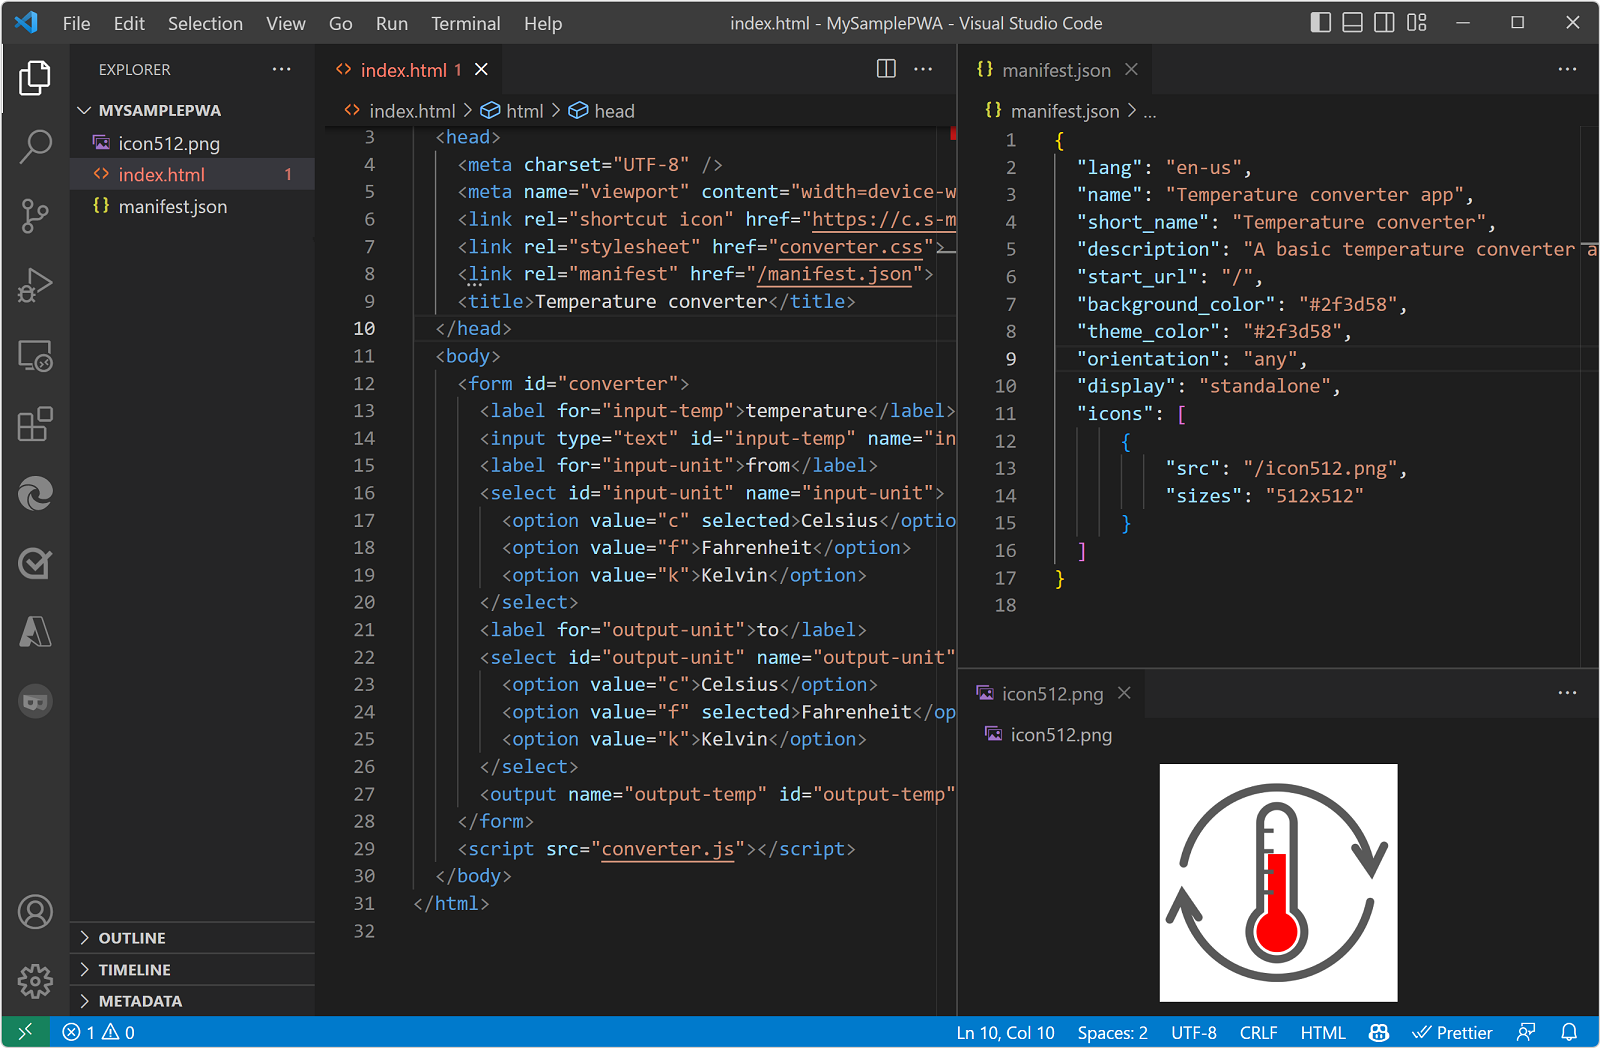 Captura de tela do VS Code mostrando o projeto PWA de exemplo, com os arquivos index.html, manifest.json e ícone